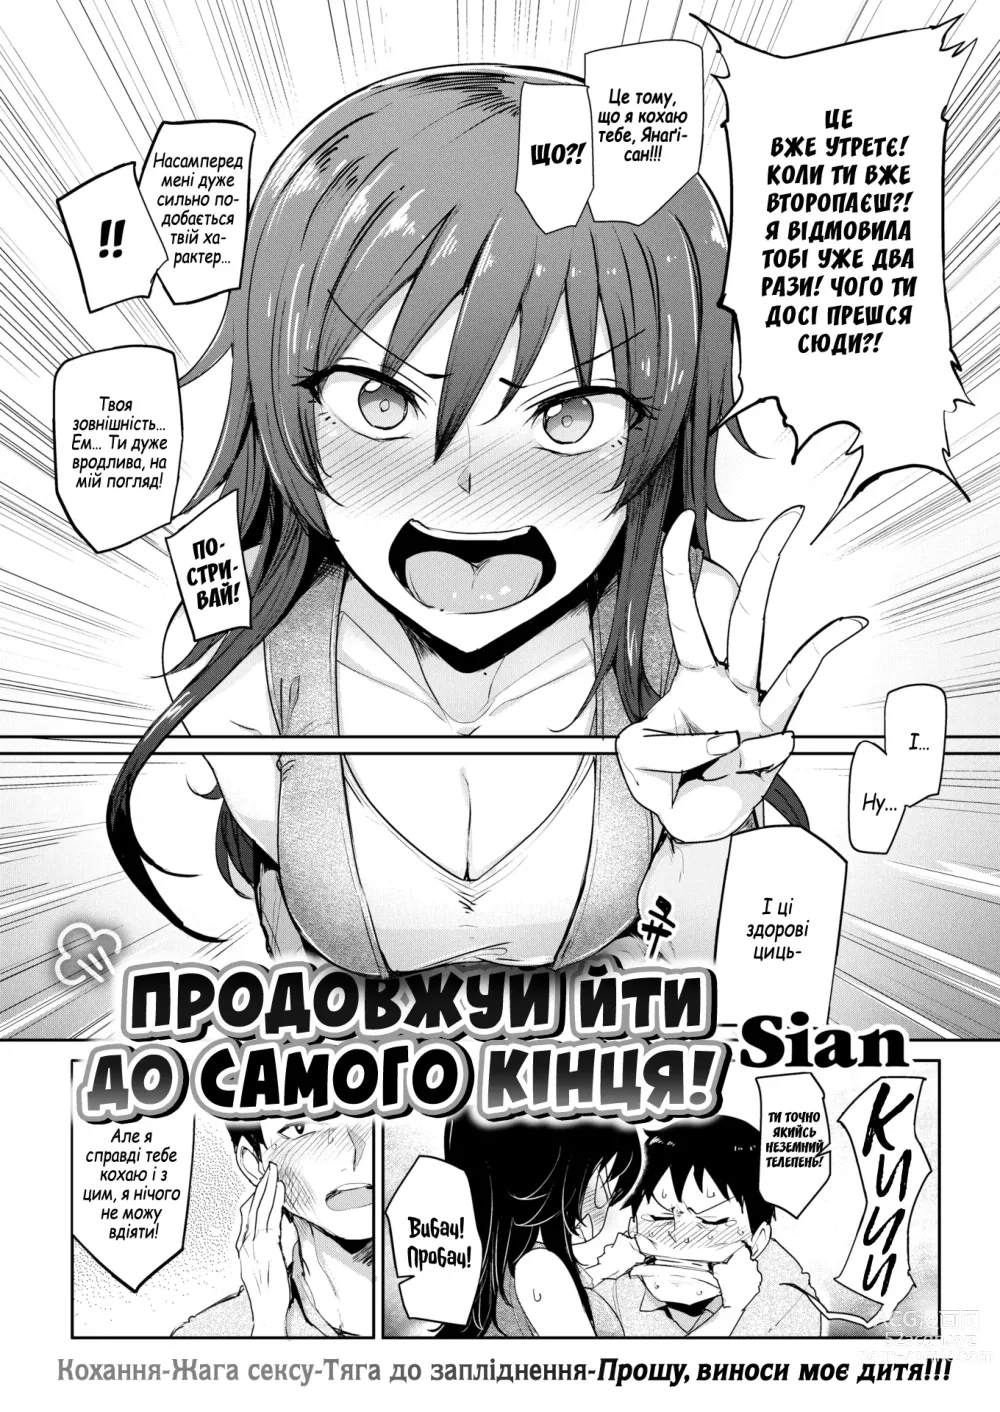 Page 2 of manga Продовжуй йти до самого кінця!